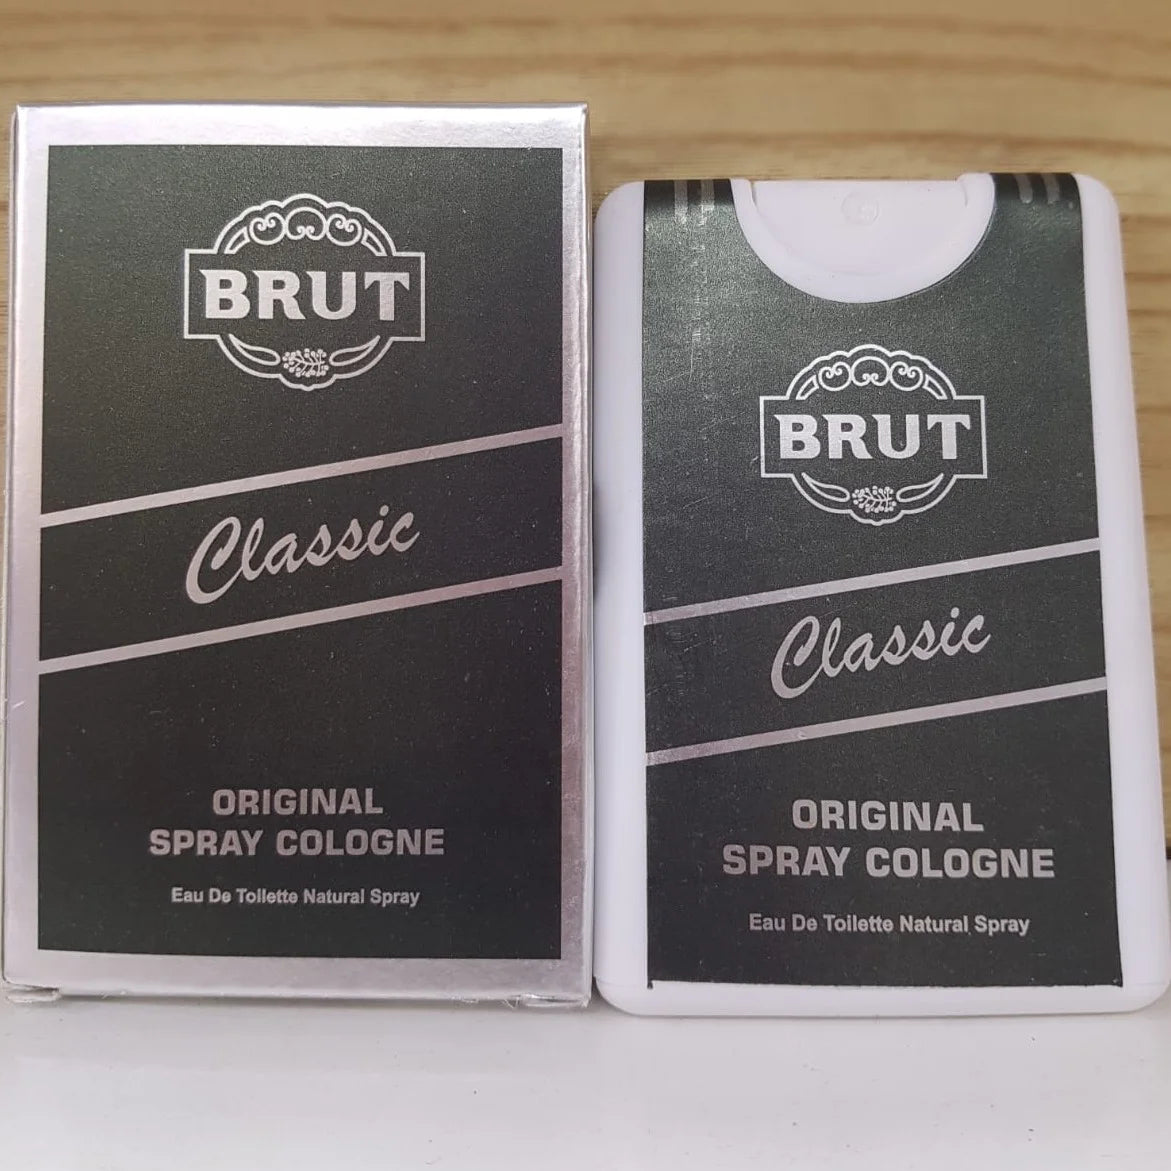 Brut Classic Original Spray Cologne